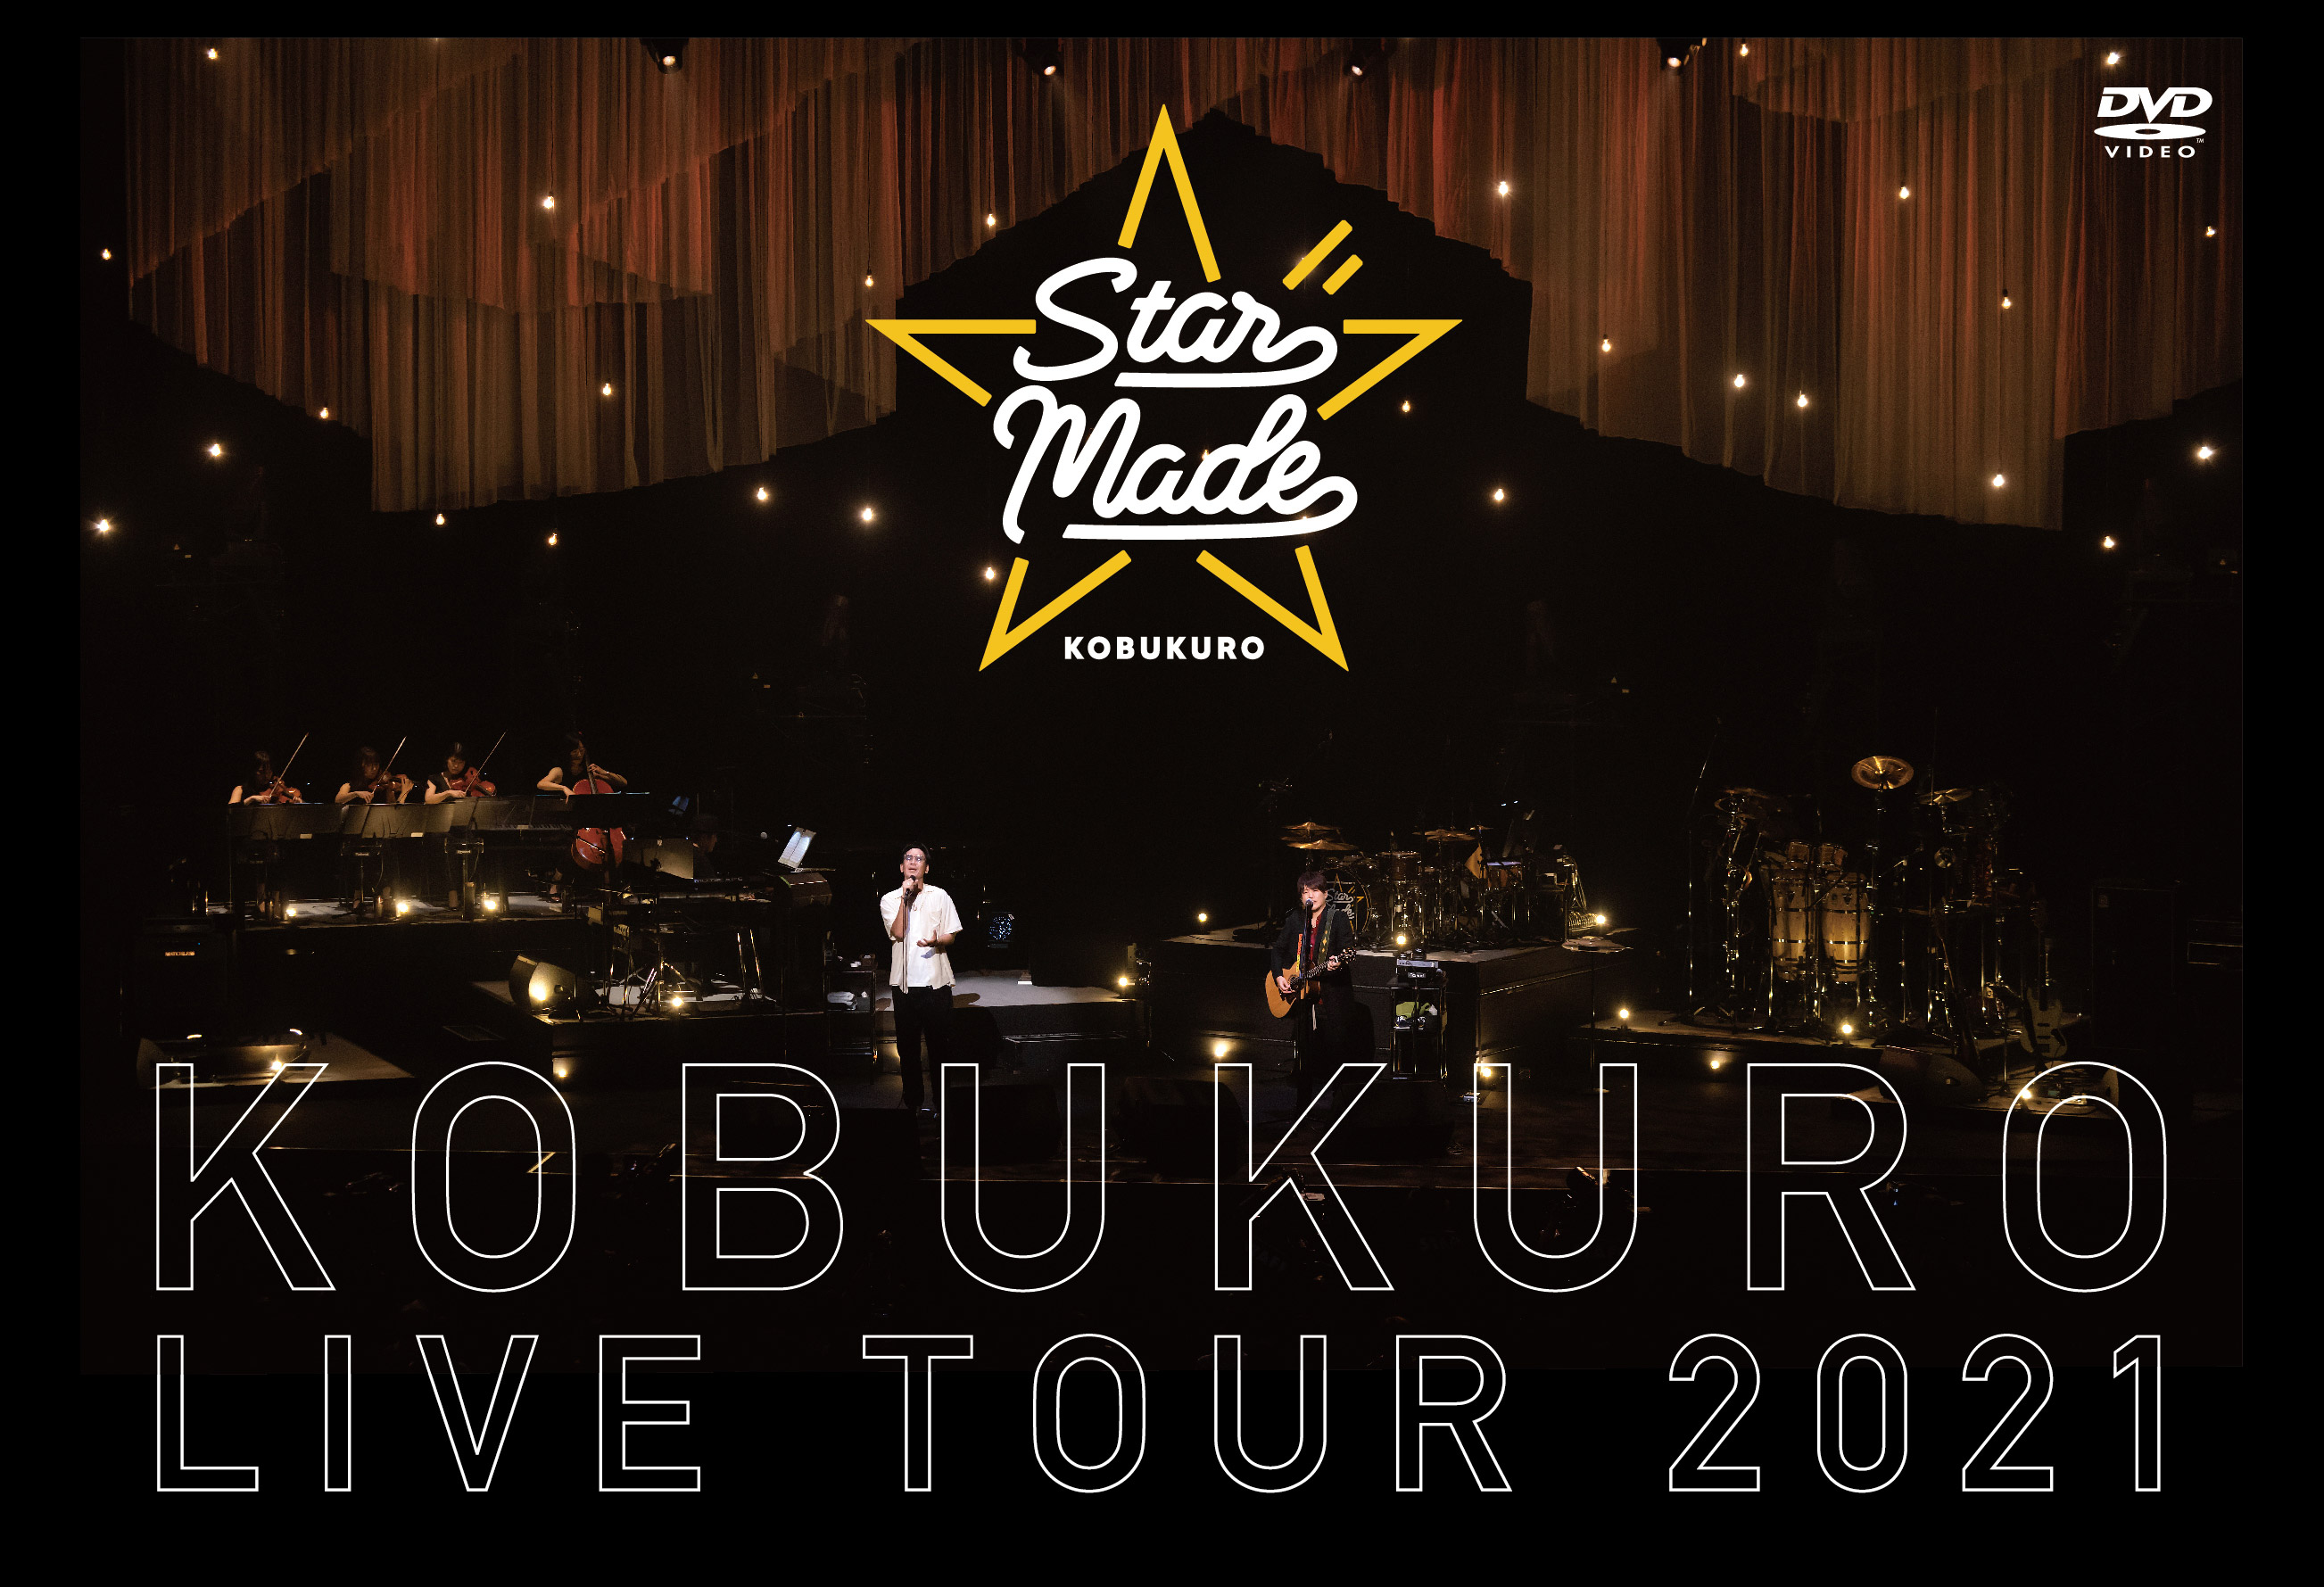 コブクロ DVD & Blu-ray「KOBUKURO LIVE TOUR 2021 “Star Made” at 